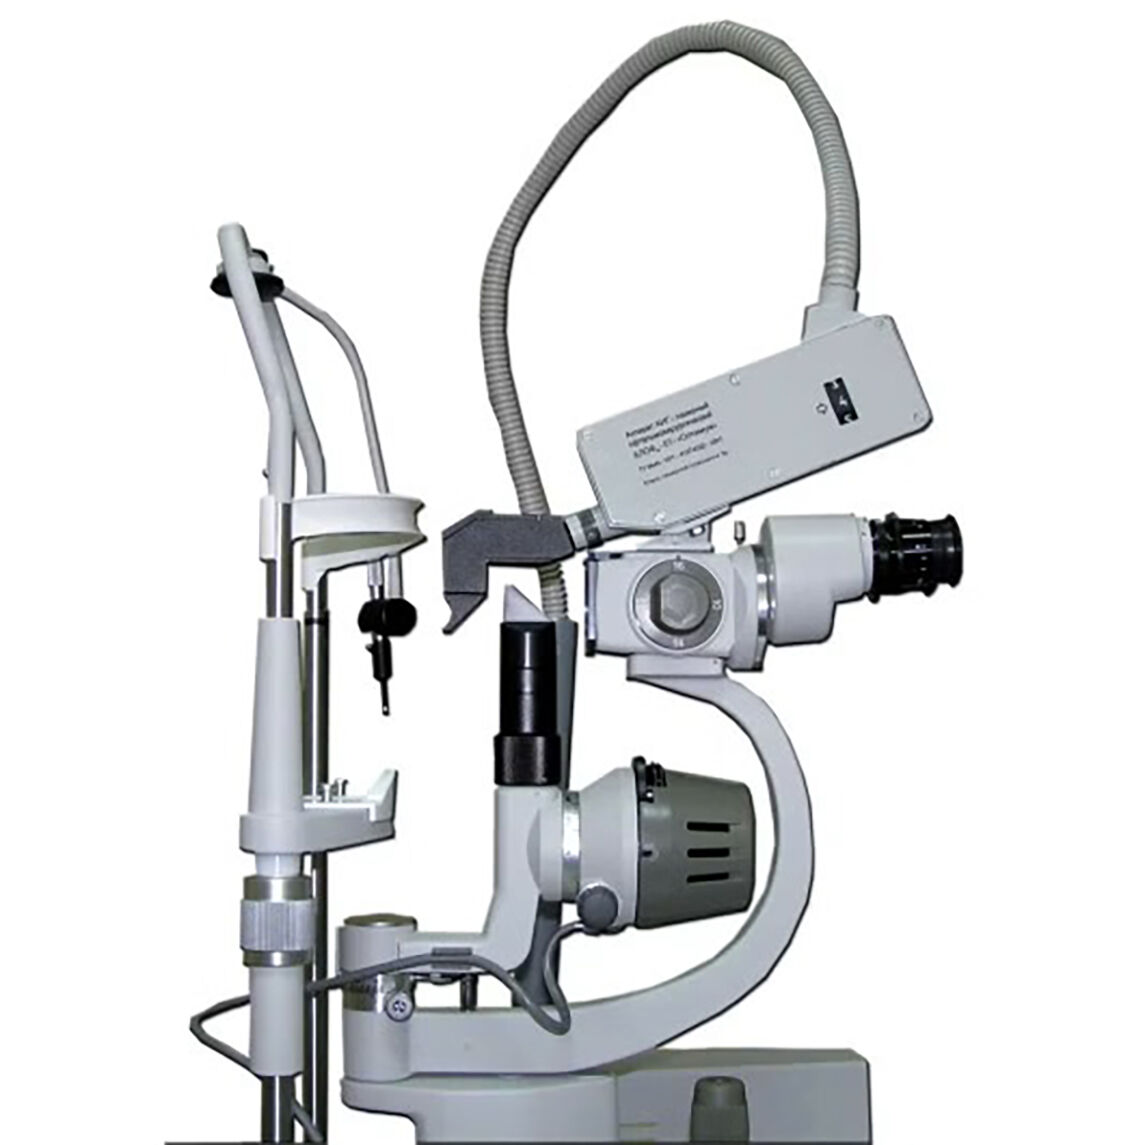 Лазерный офтальмоперфоратор на основе YAG‑лазера АЛОФ мх-01 "Оптимум" (1064 нм)